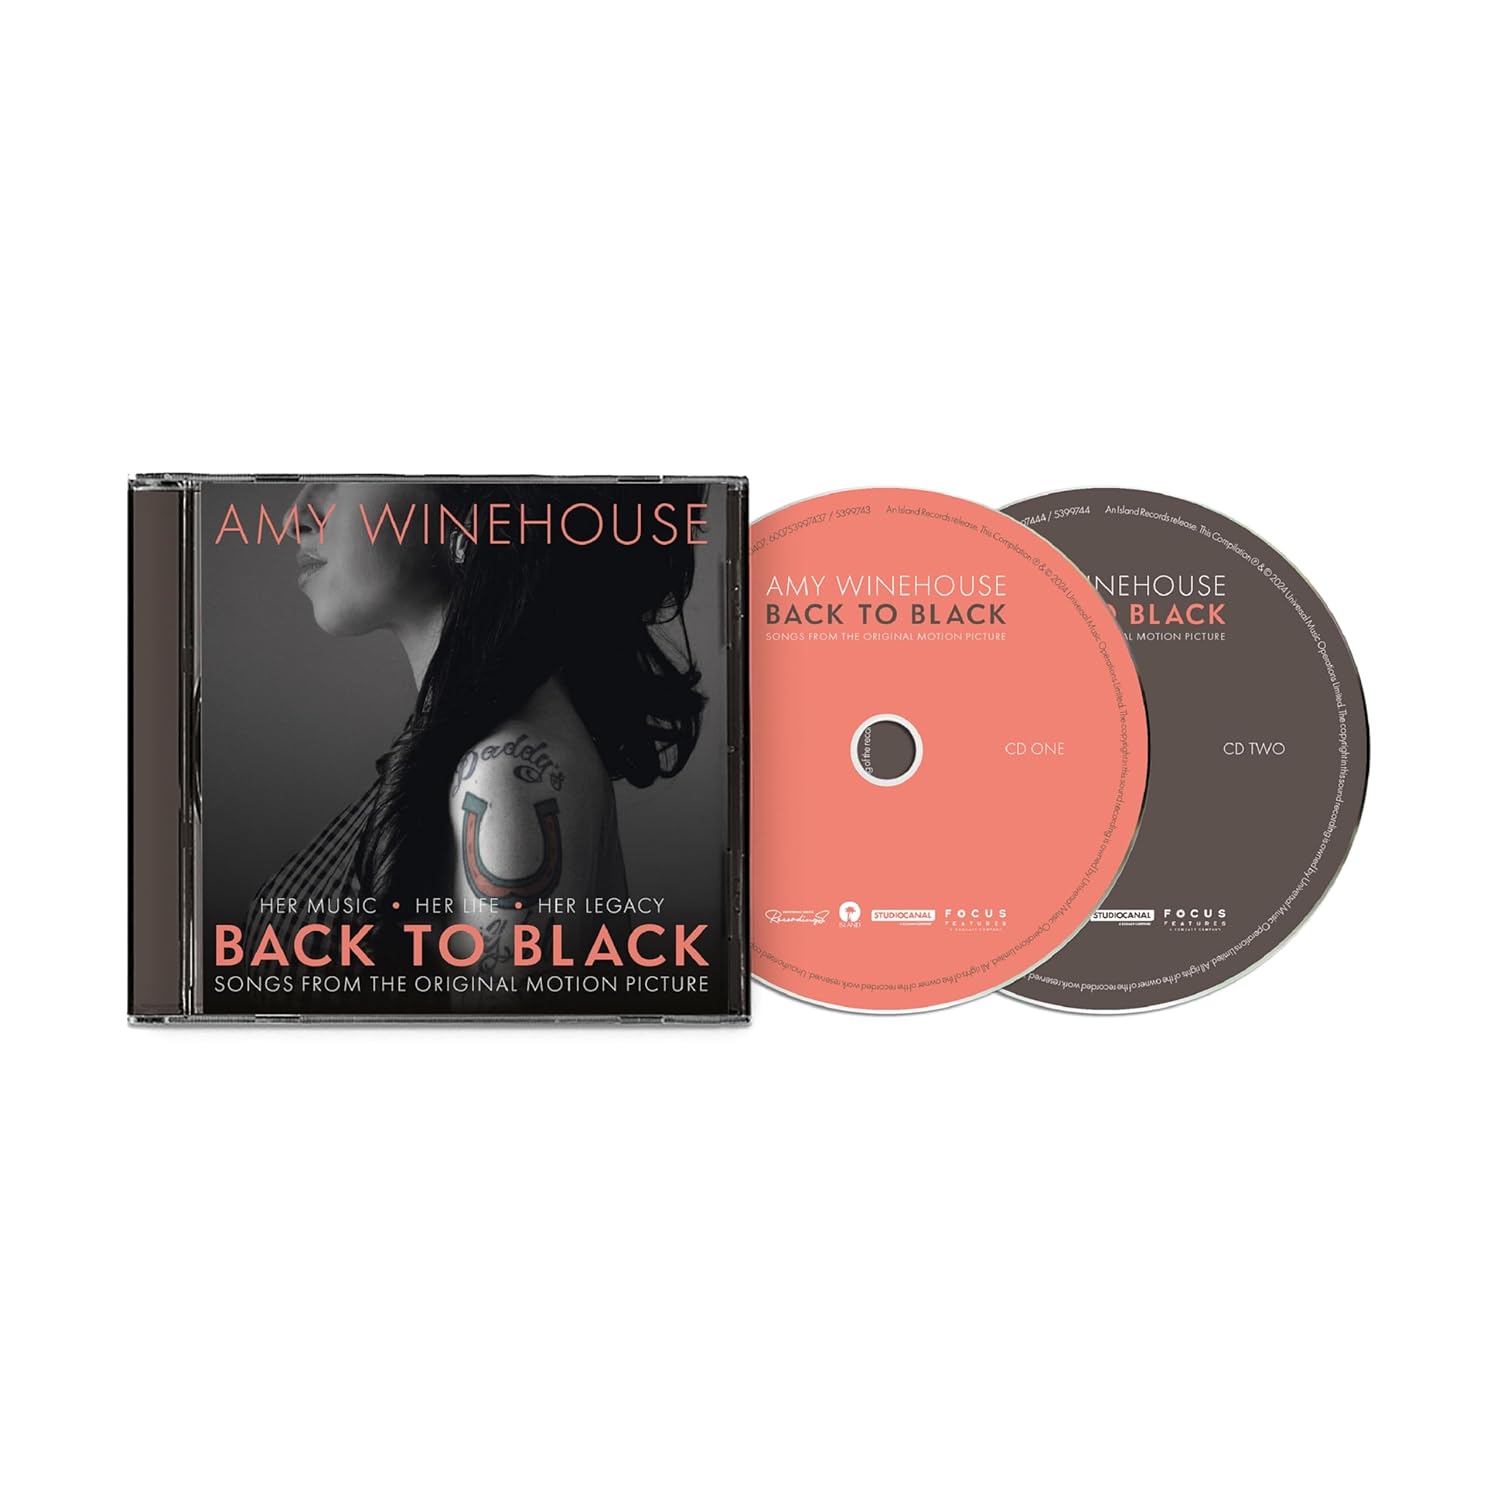 WINEHOUSE AMY – BACK TO BLACK SOUNDTRACK CD2